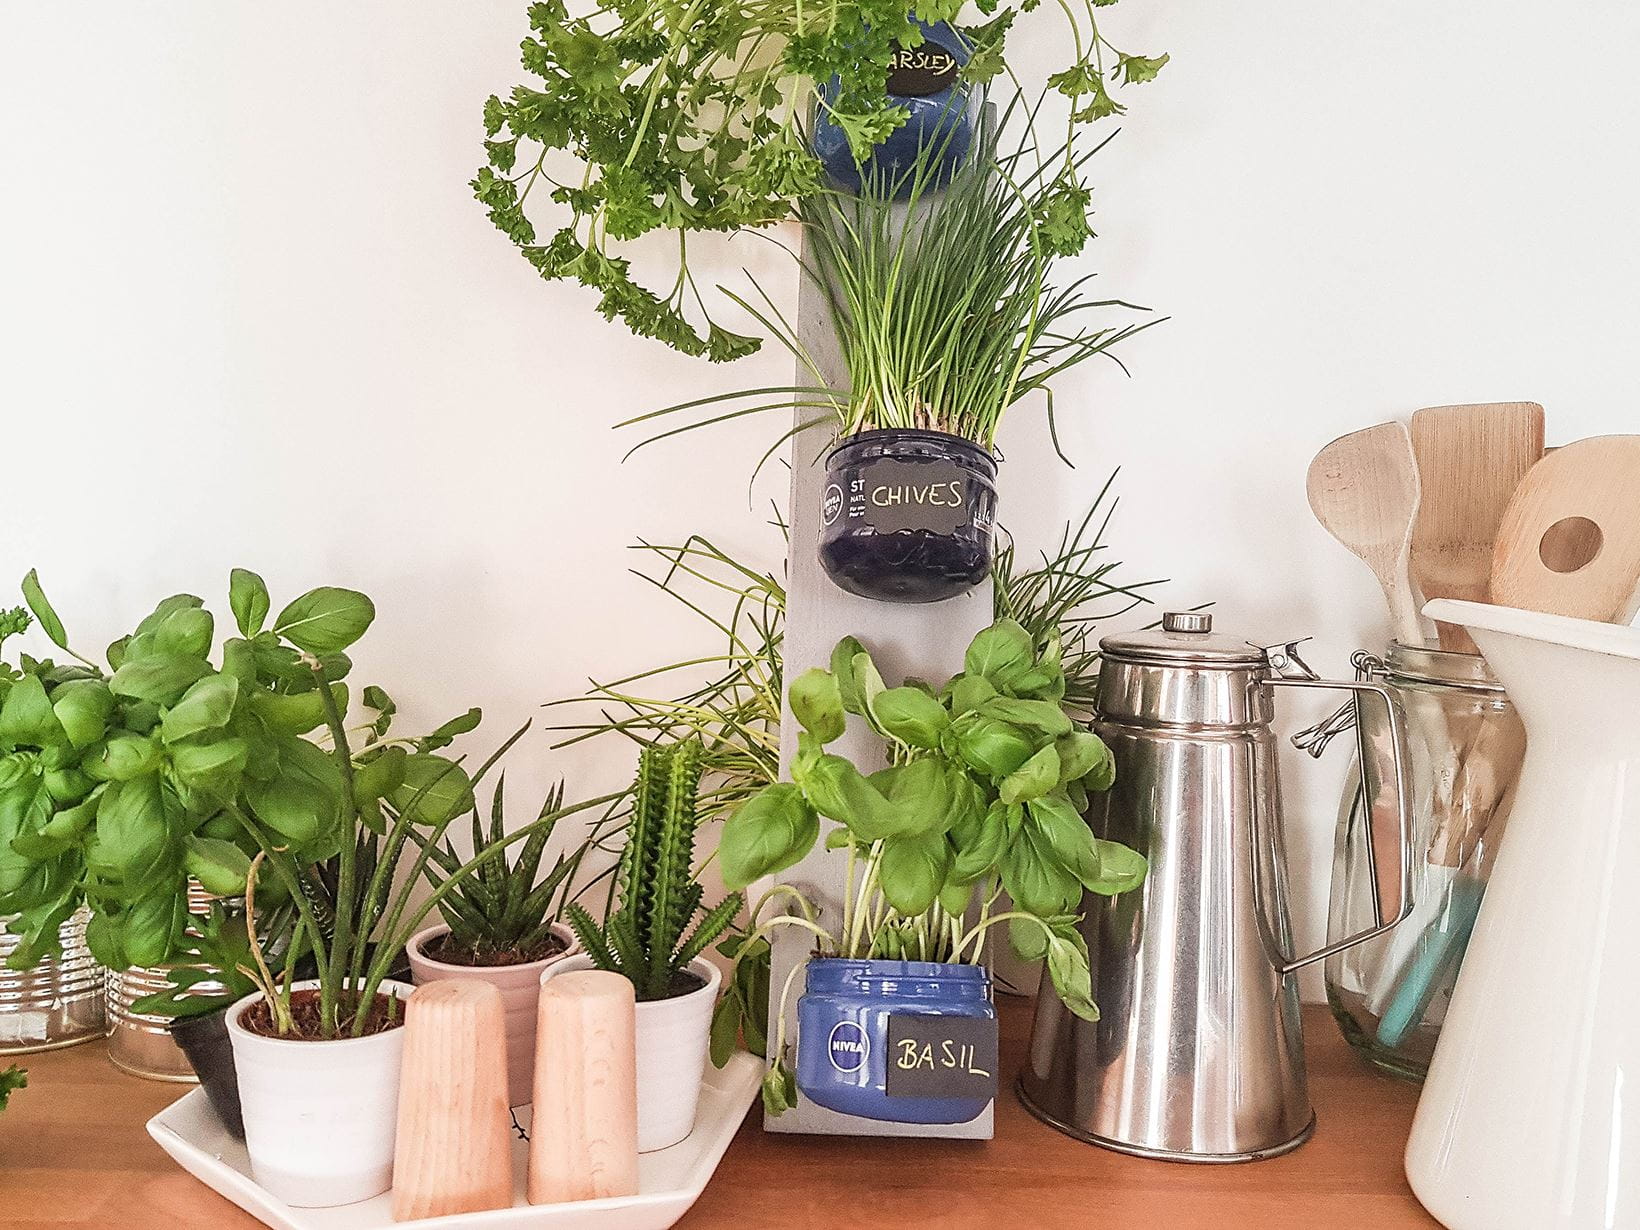 DIY NIVEA Herb Garden tutorial